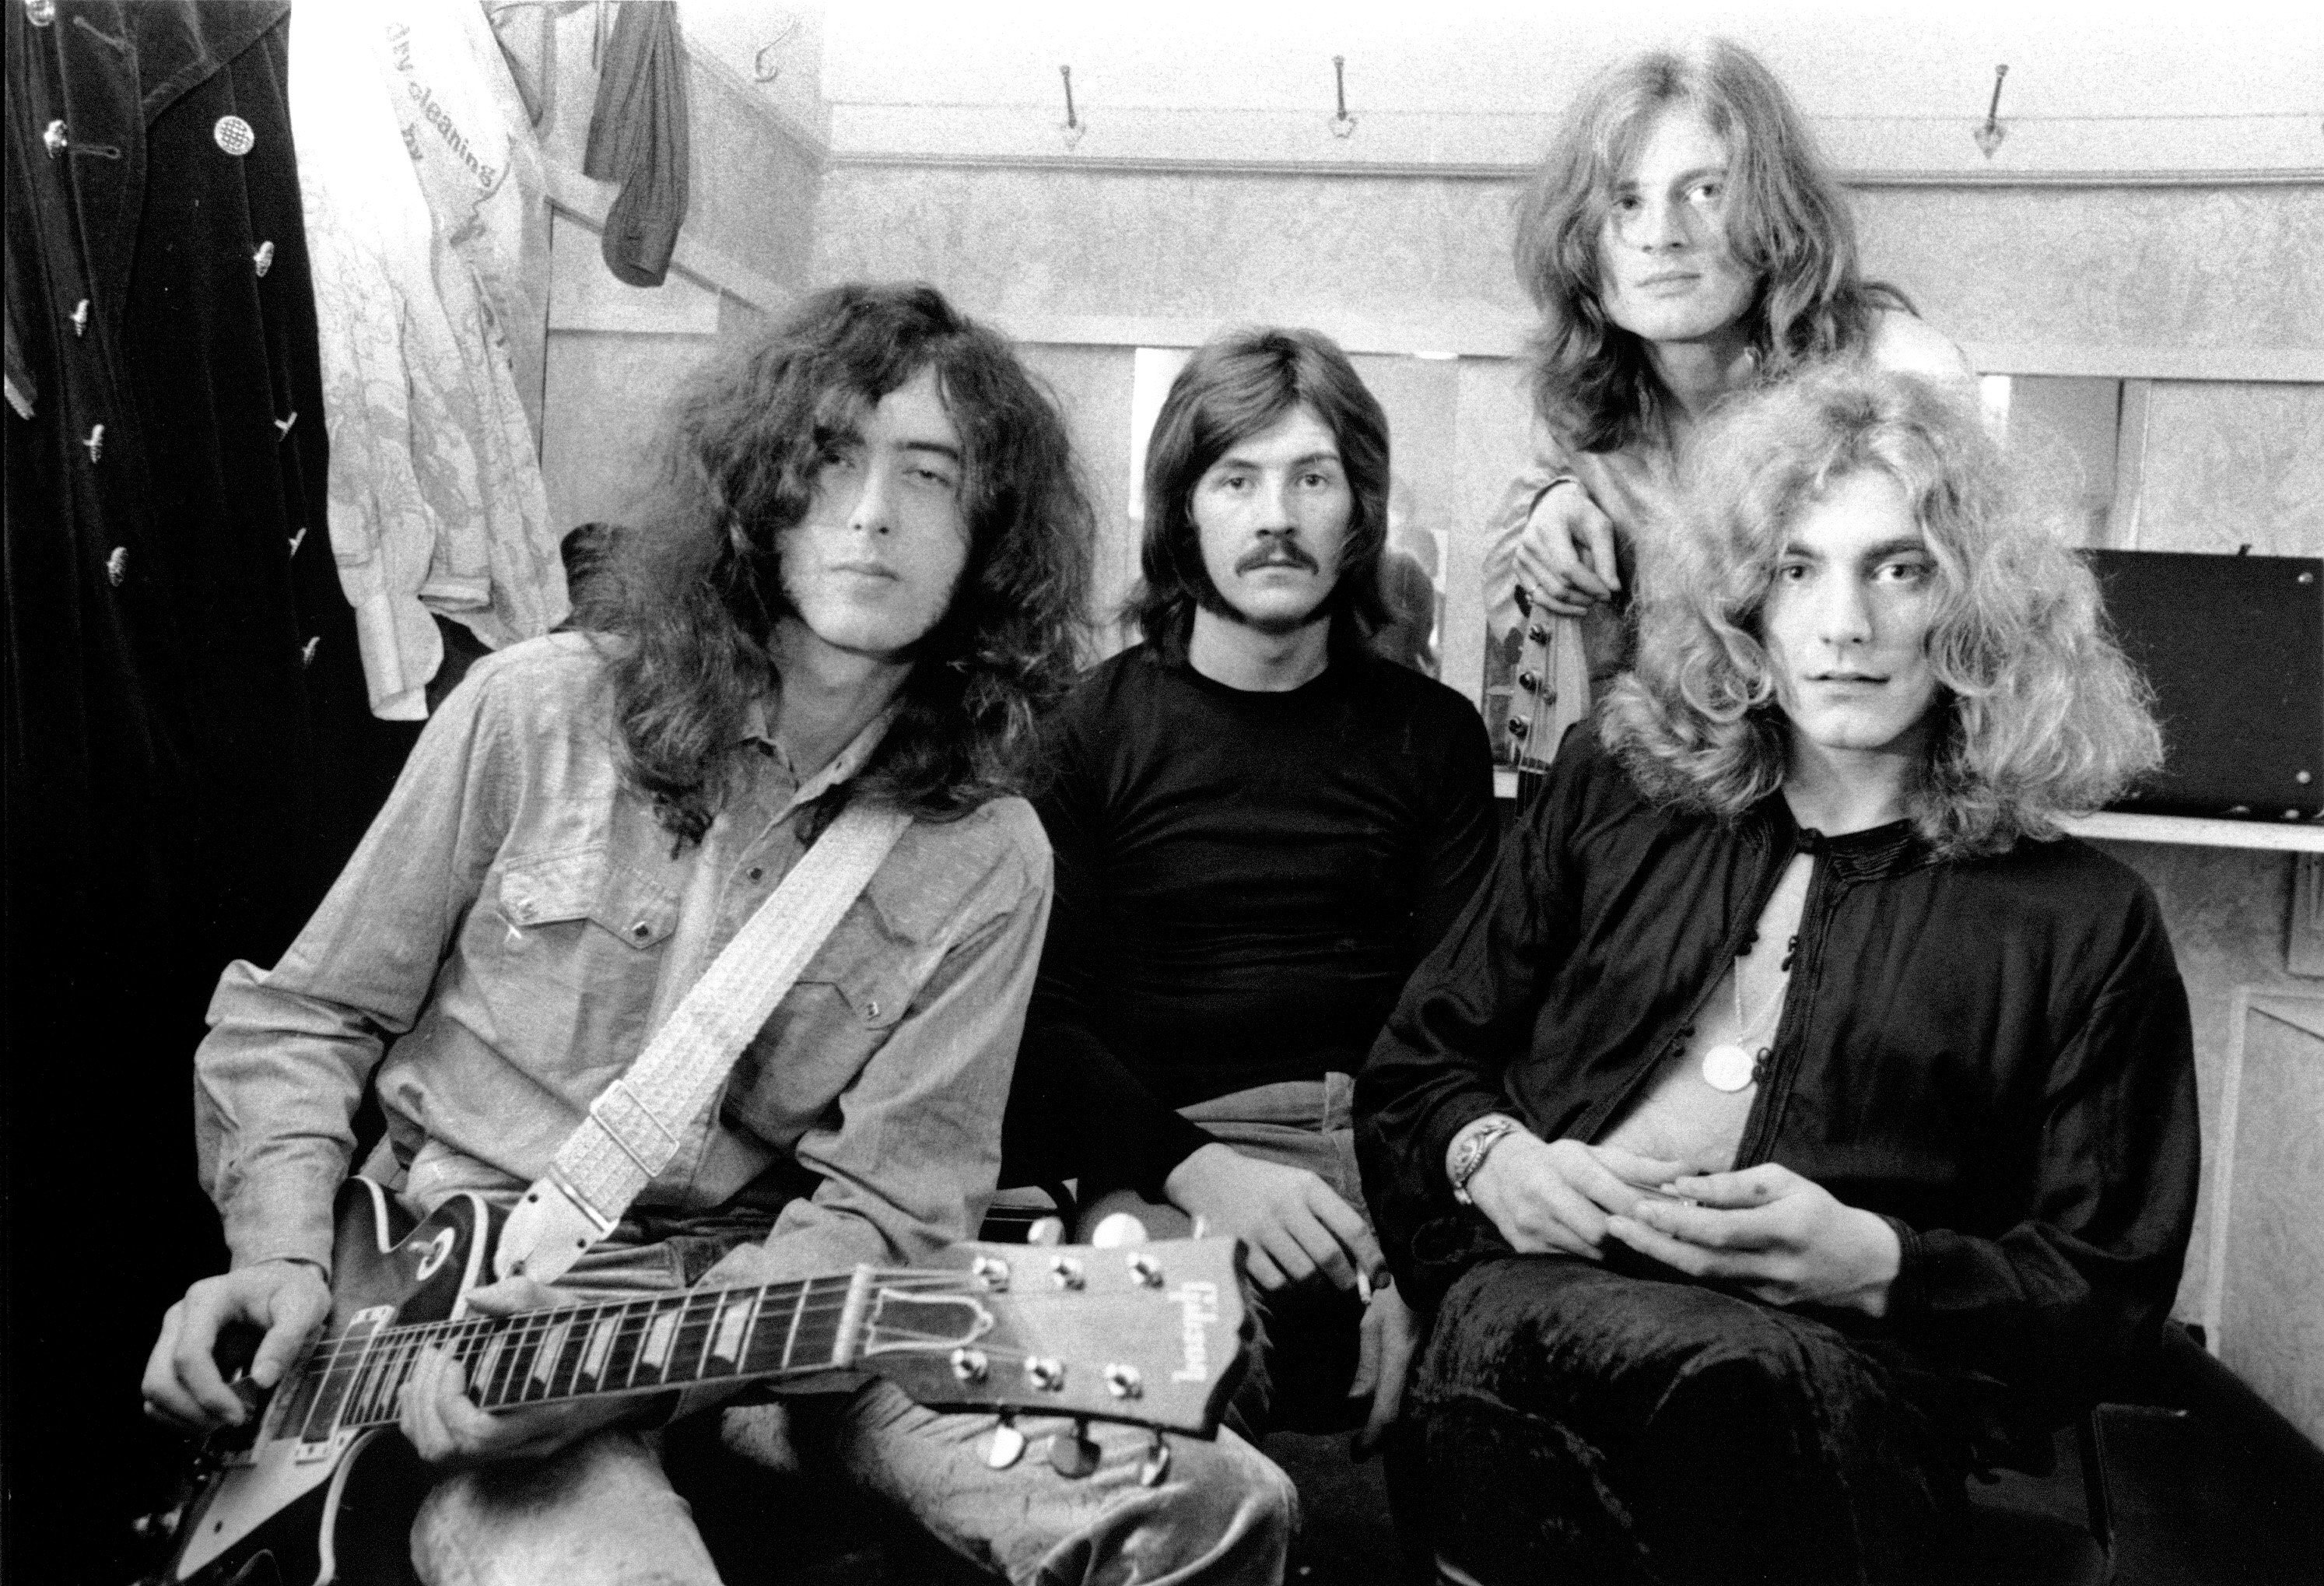 Led Zeppelin sitting together